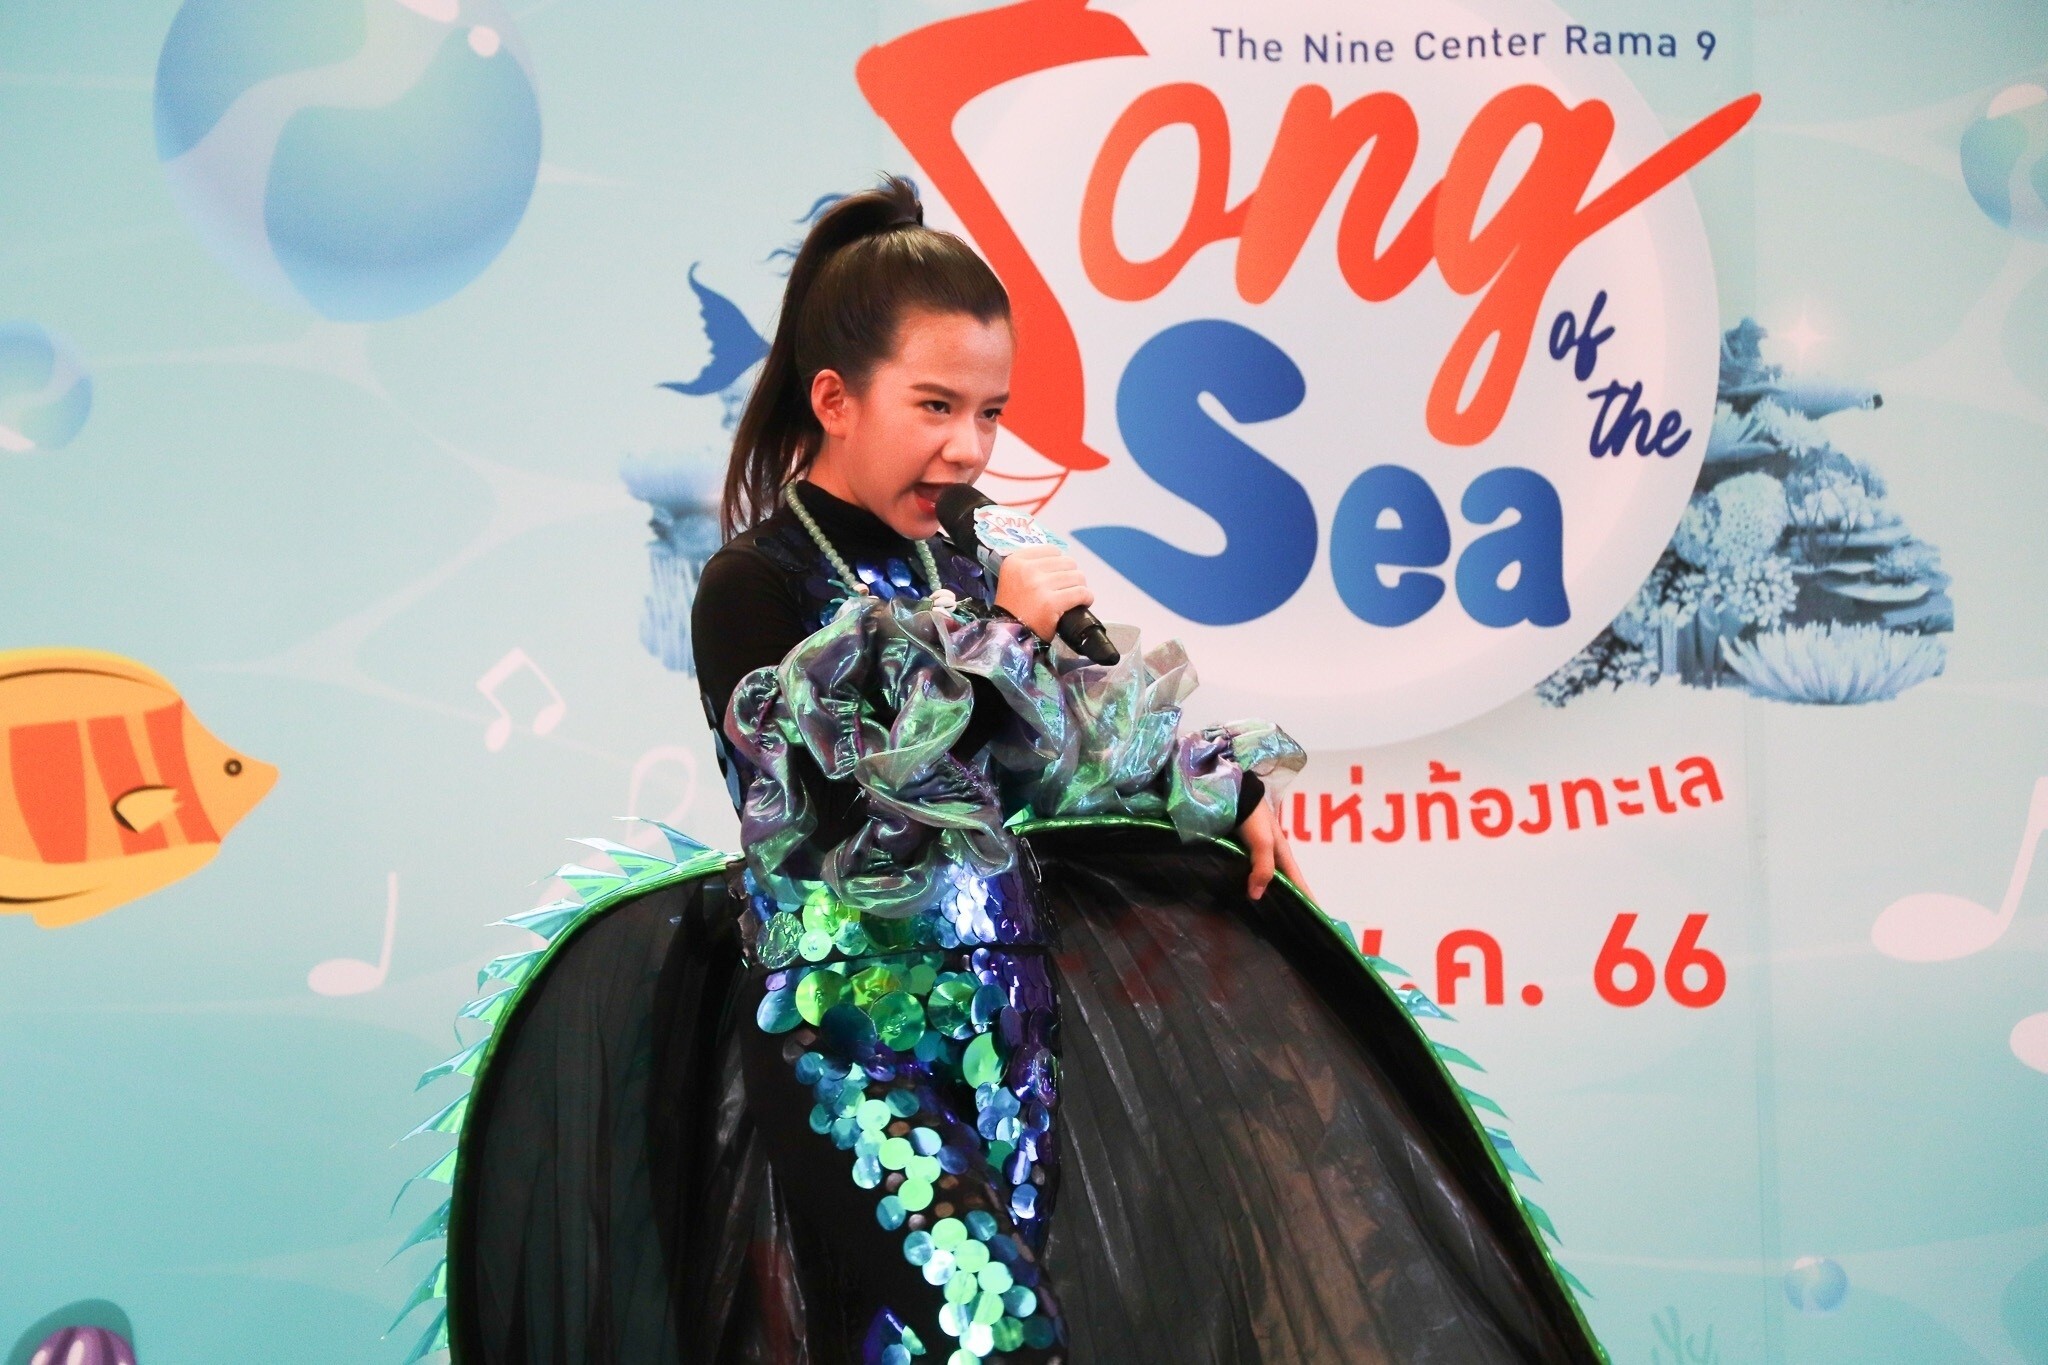 เดอะไนน์ เซ็นเตอร์ พระราม 9 เปิดโลกแห่งใต้ท้องทะเล รวมนักร้องวัยจิ๋ว ประชันเสียงเพลงในงาน "Song of The Sea"